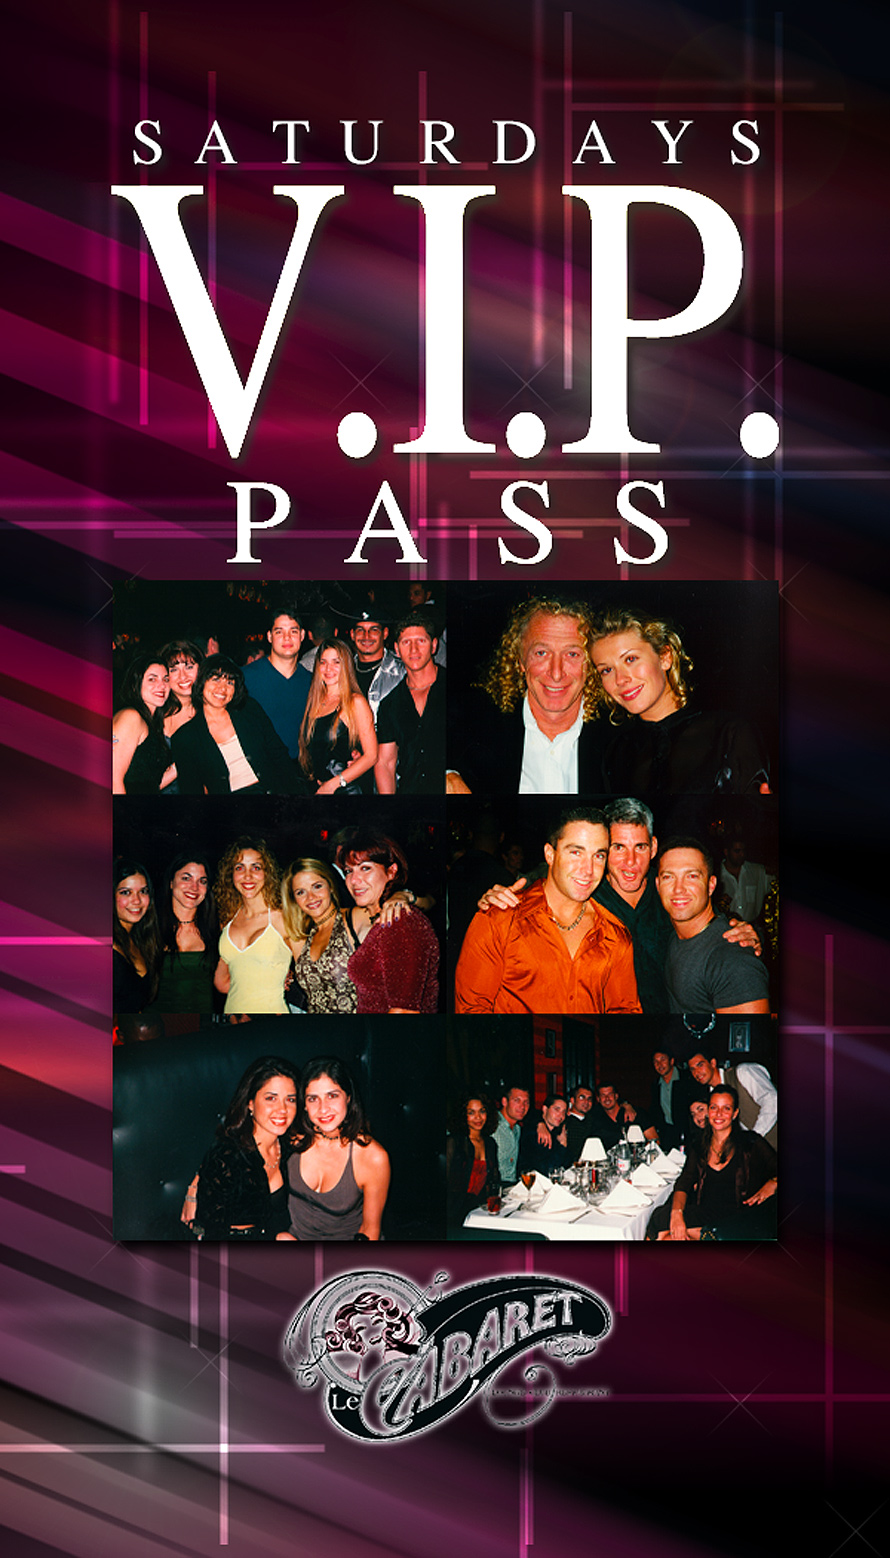 Velvet Saturdays VIP Pass at Le Cabaret